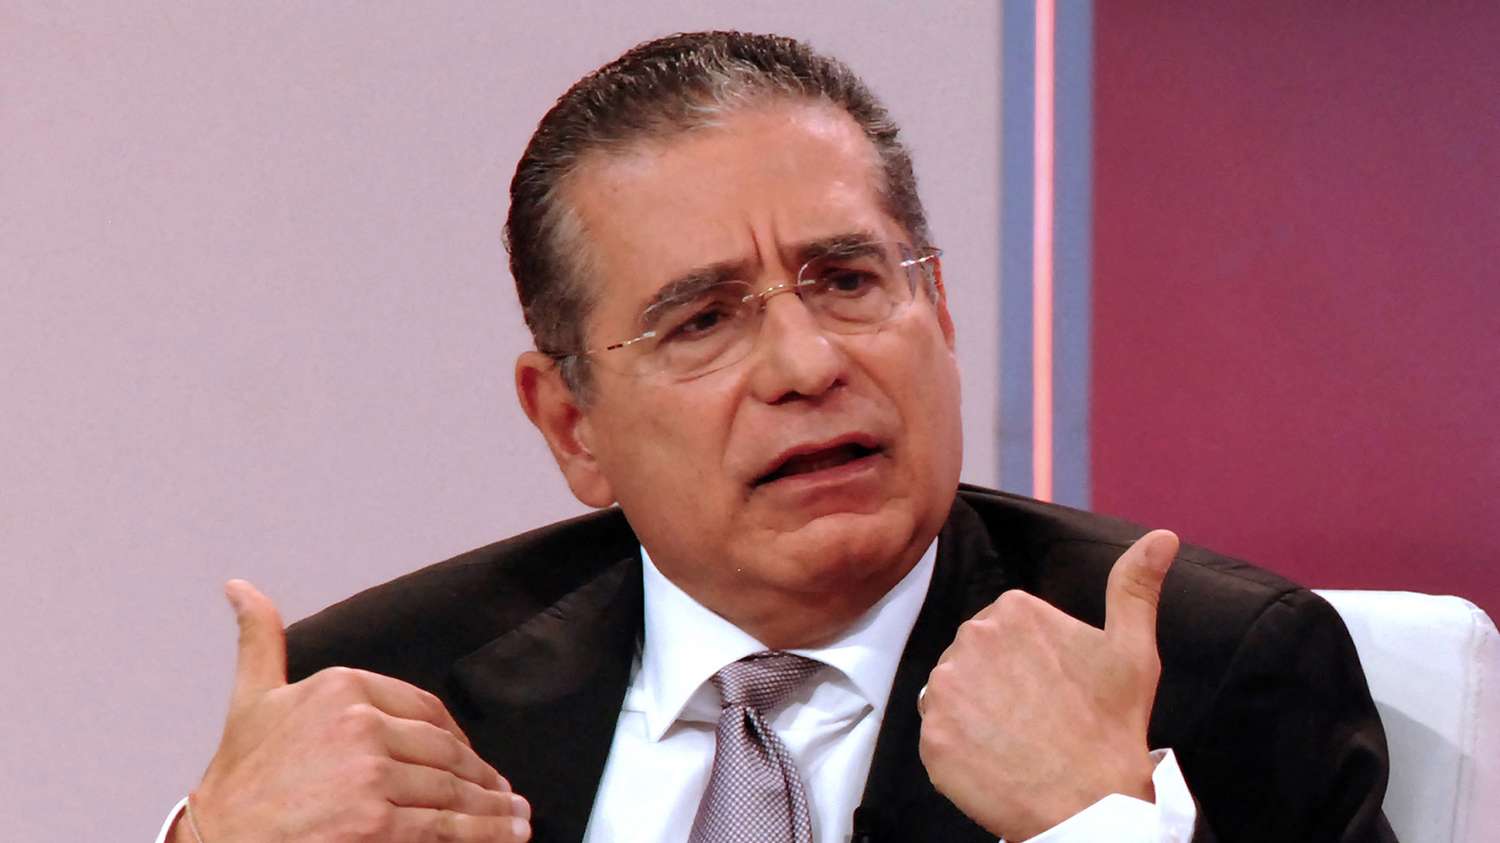 Murió Ramón Fonseca, una de la figuras centrales del escándalo de los “Panama Papers”